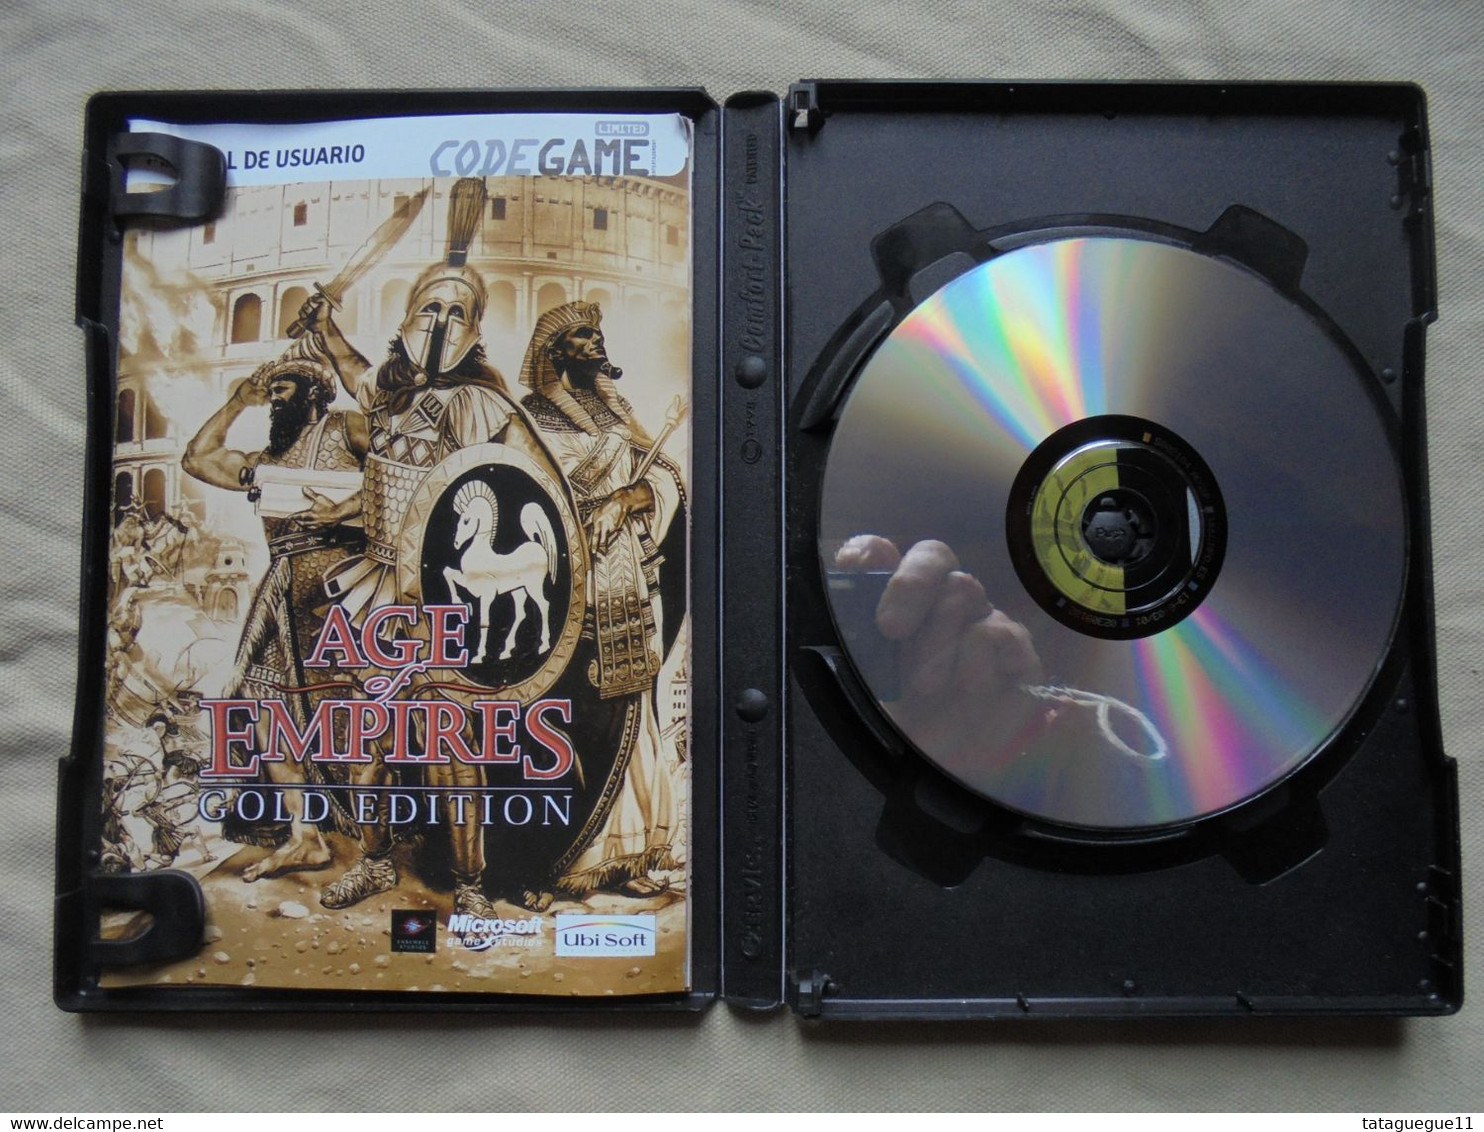 Vintage - Jeu PC CD Rom - Age Of Empires Totalmente En Castellano - 1998 - Juegos PC